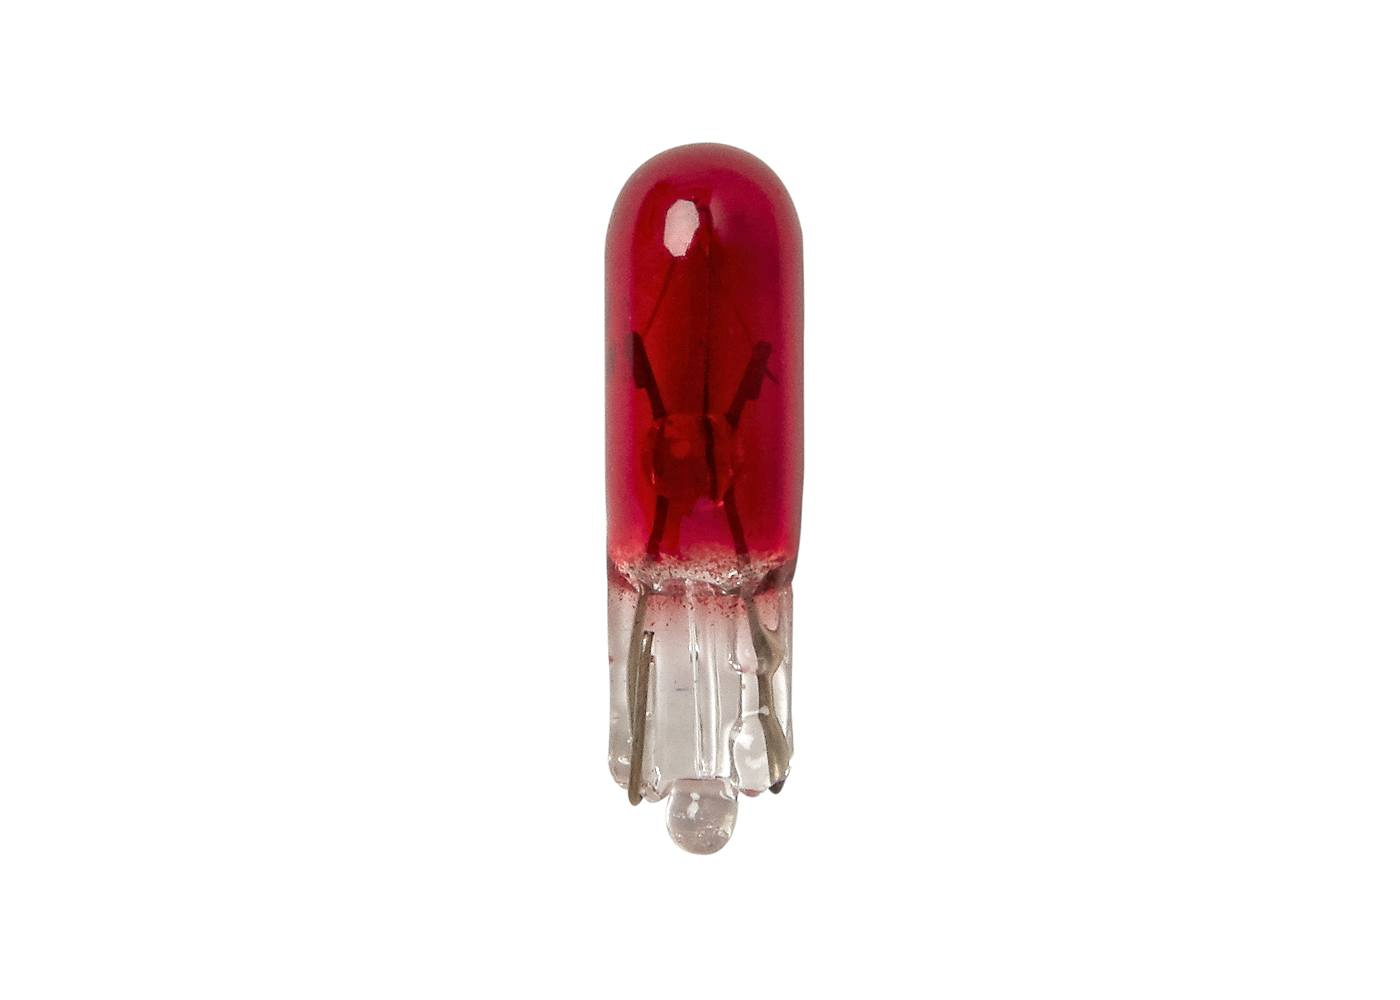 Лампа Дополнительного Освещения W1.2w Индикатор (Красная) 12v 1.2w RING арт. R286R